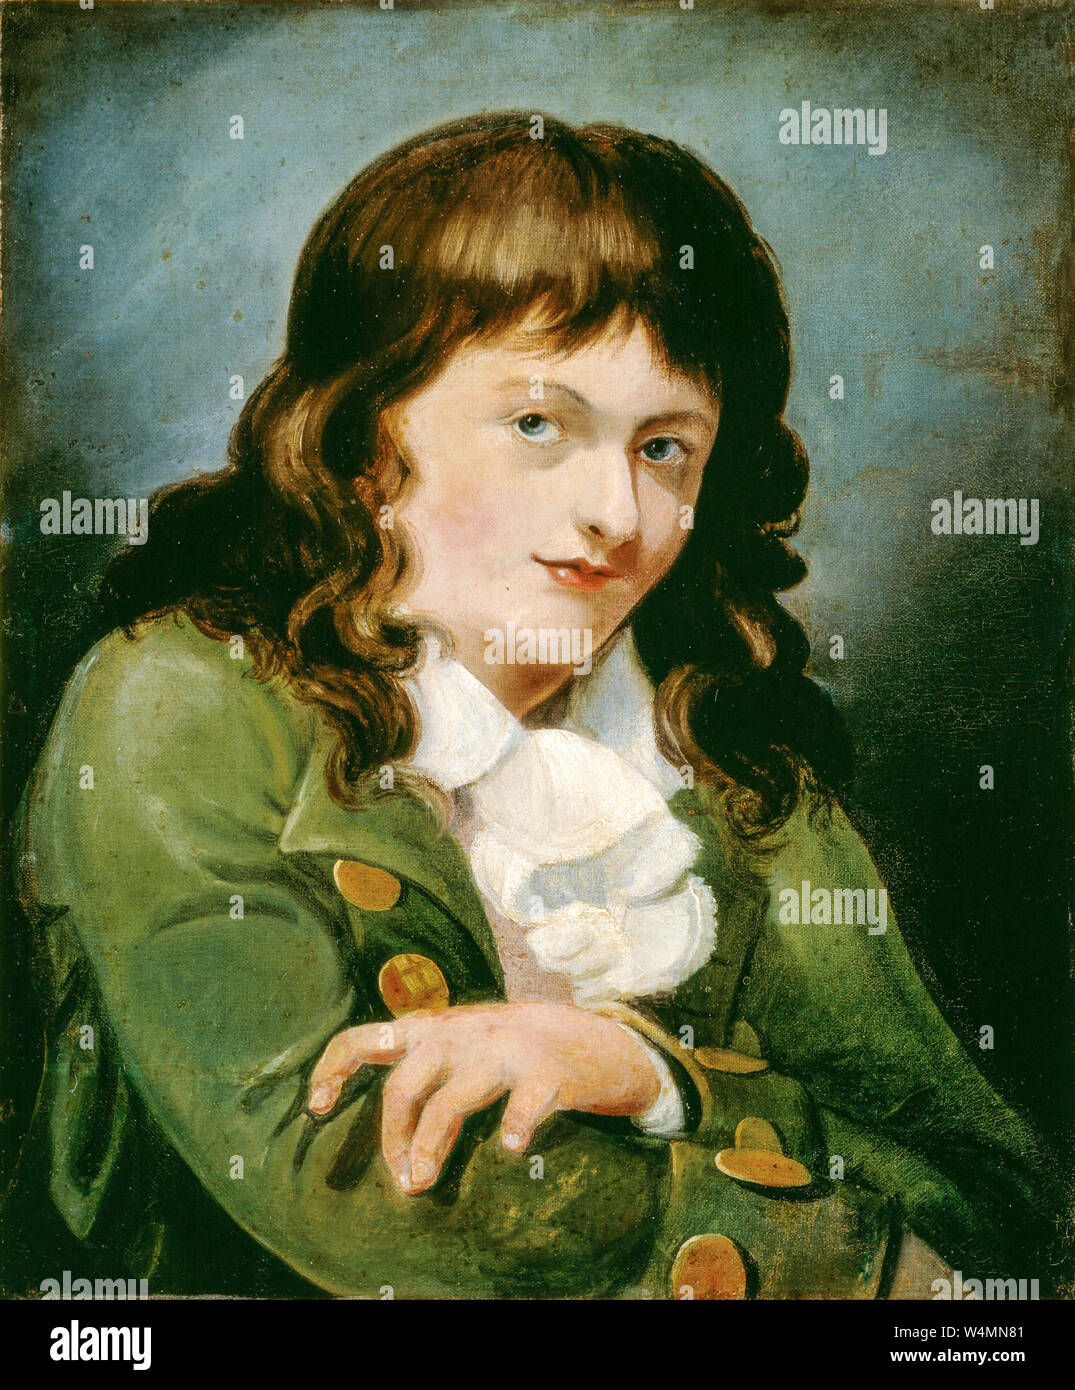 JMW Turner (1775-1851), Autoportrait en jeune homme, peinture, 1791-1793 Banque D'Images